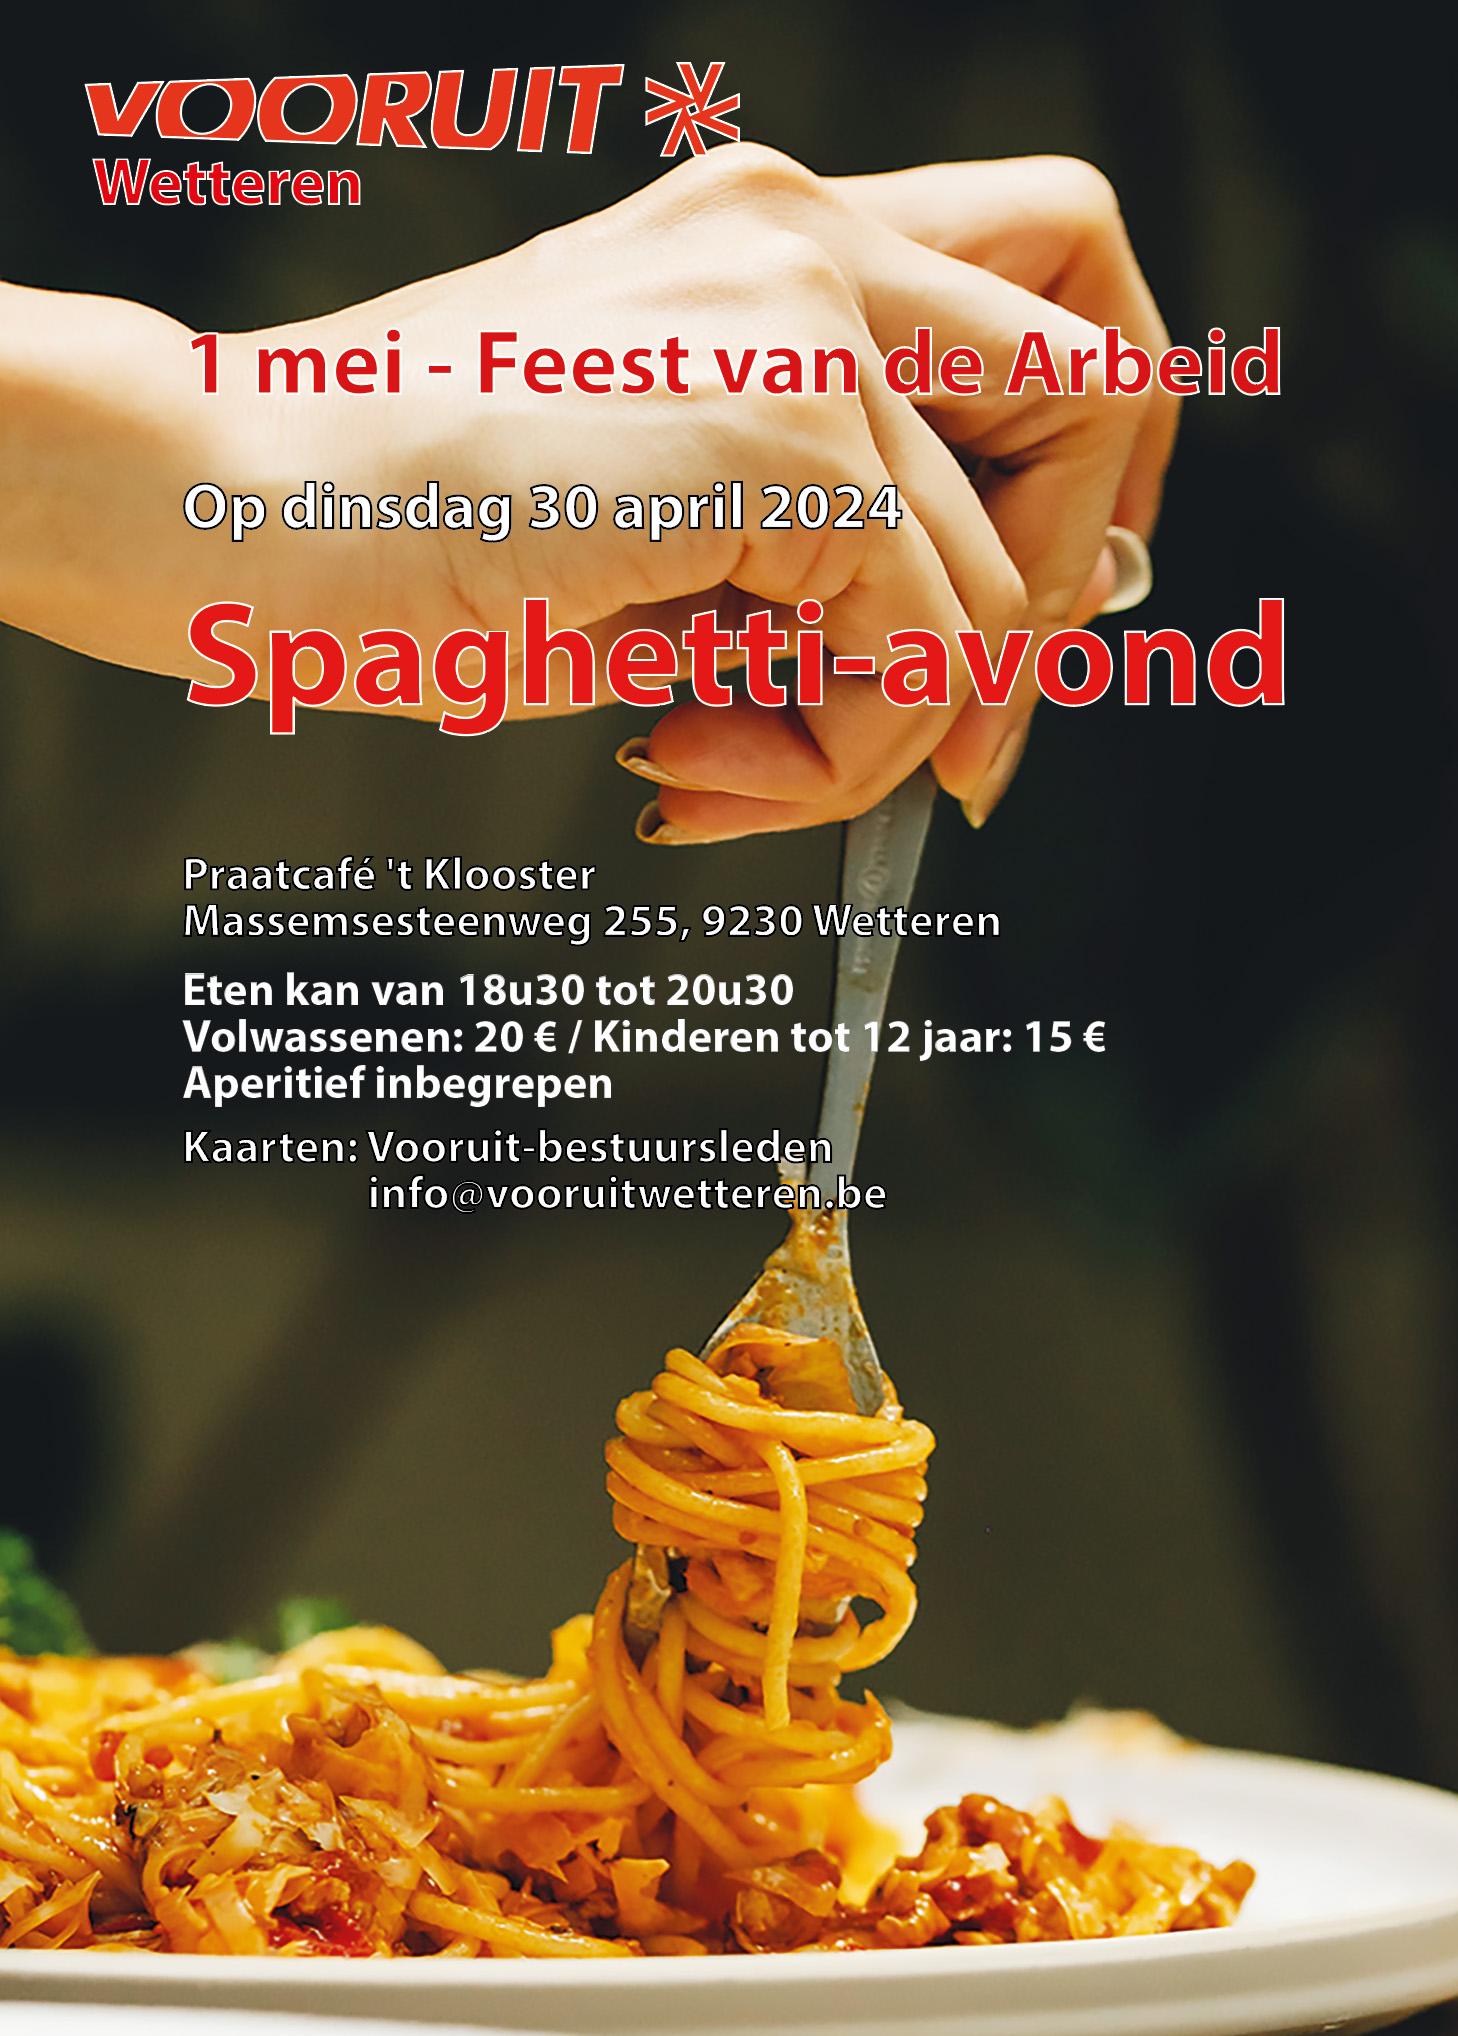 Spaghetti-avond Vooruit Wetteren (30 april)